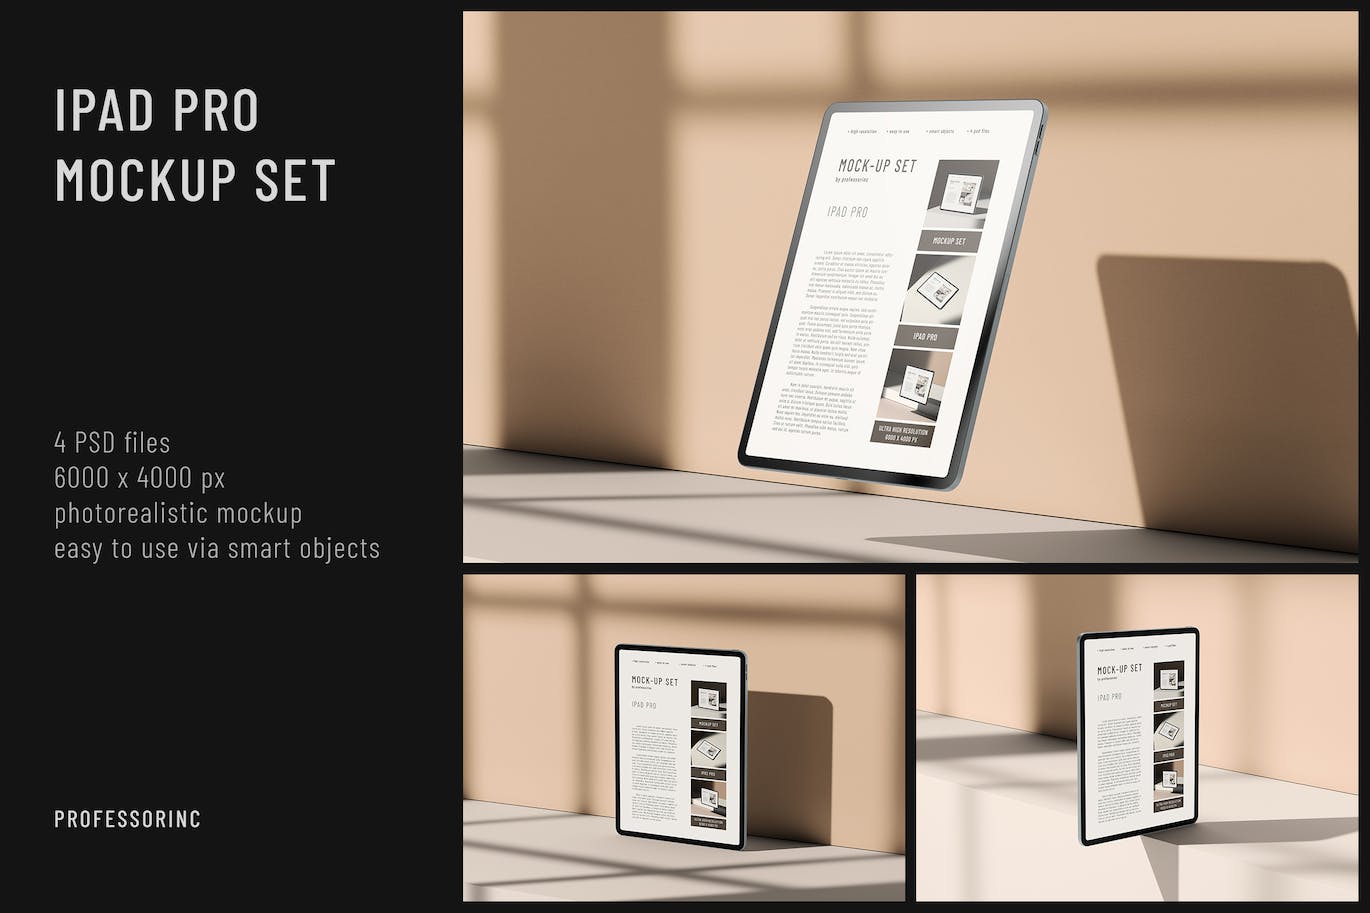 苹果平板电脑iPad Pro样机集 iPad Pro Mockup Set 样机素材 第1张